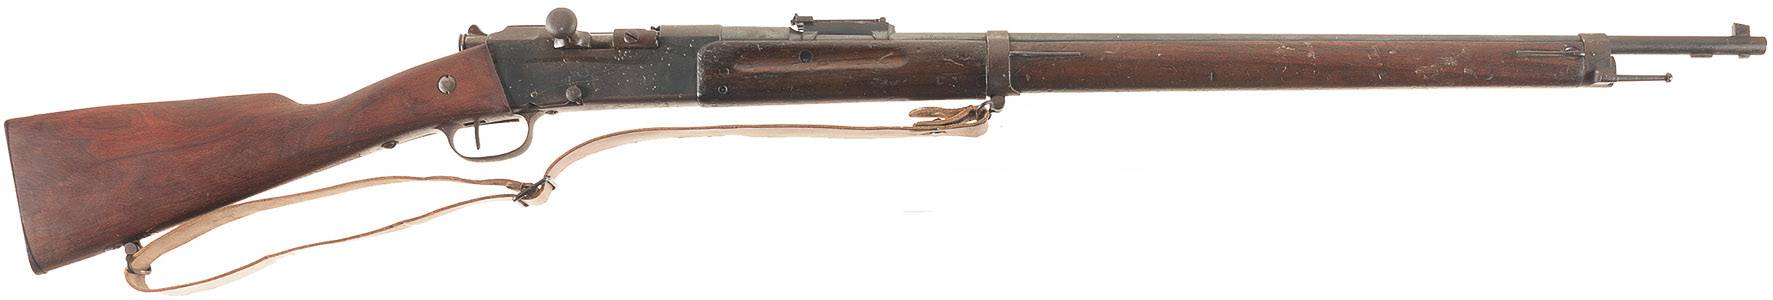 Lebel модель 1886 винтовки - lebel model 1886 rifle - qwe.wiki